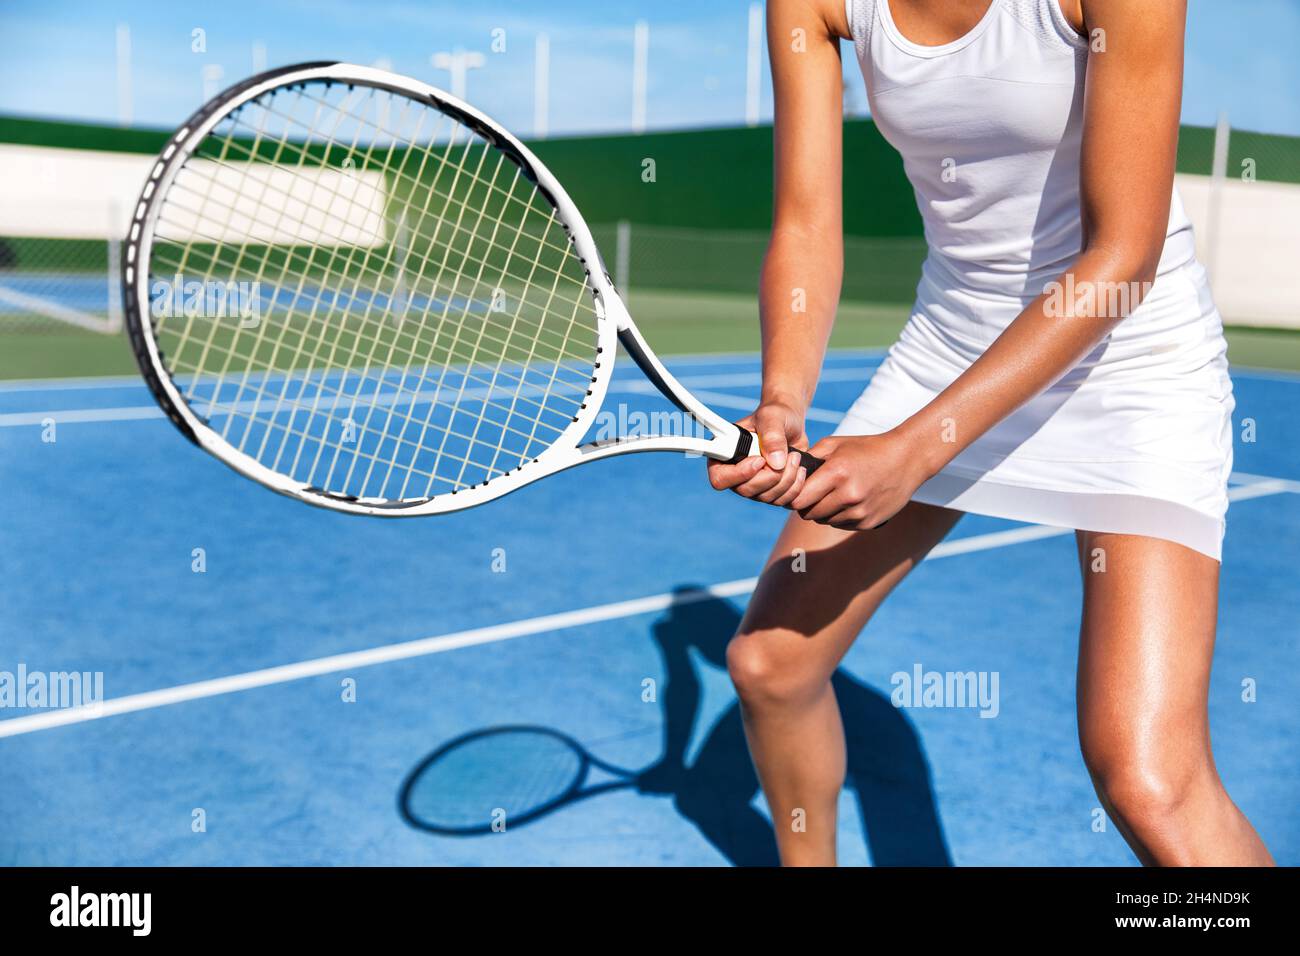 Joueur de tennis femme prêt à jouer à un jeu sur un terrain bleu dur tenant une raquette en position portant une jupe habillée blanche.Athlète féminine sport fille en été Banque D'Images